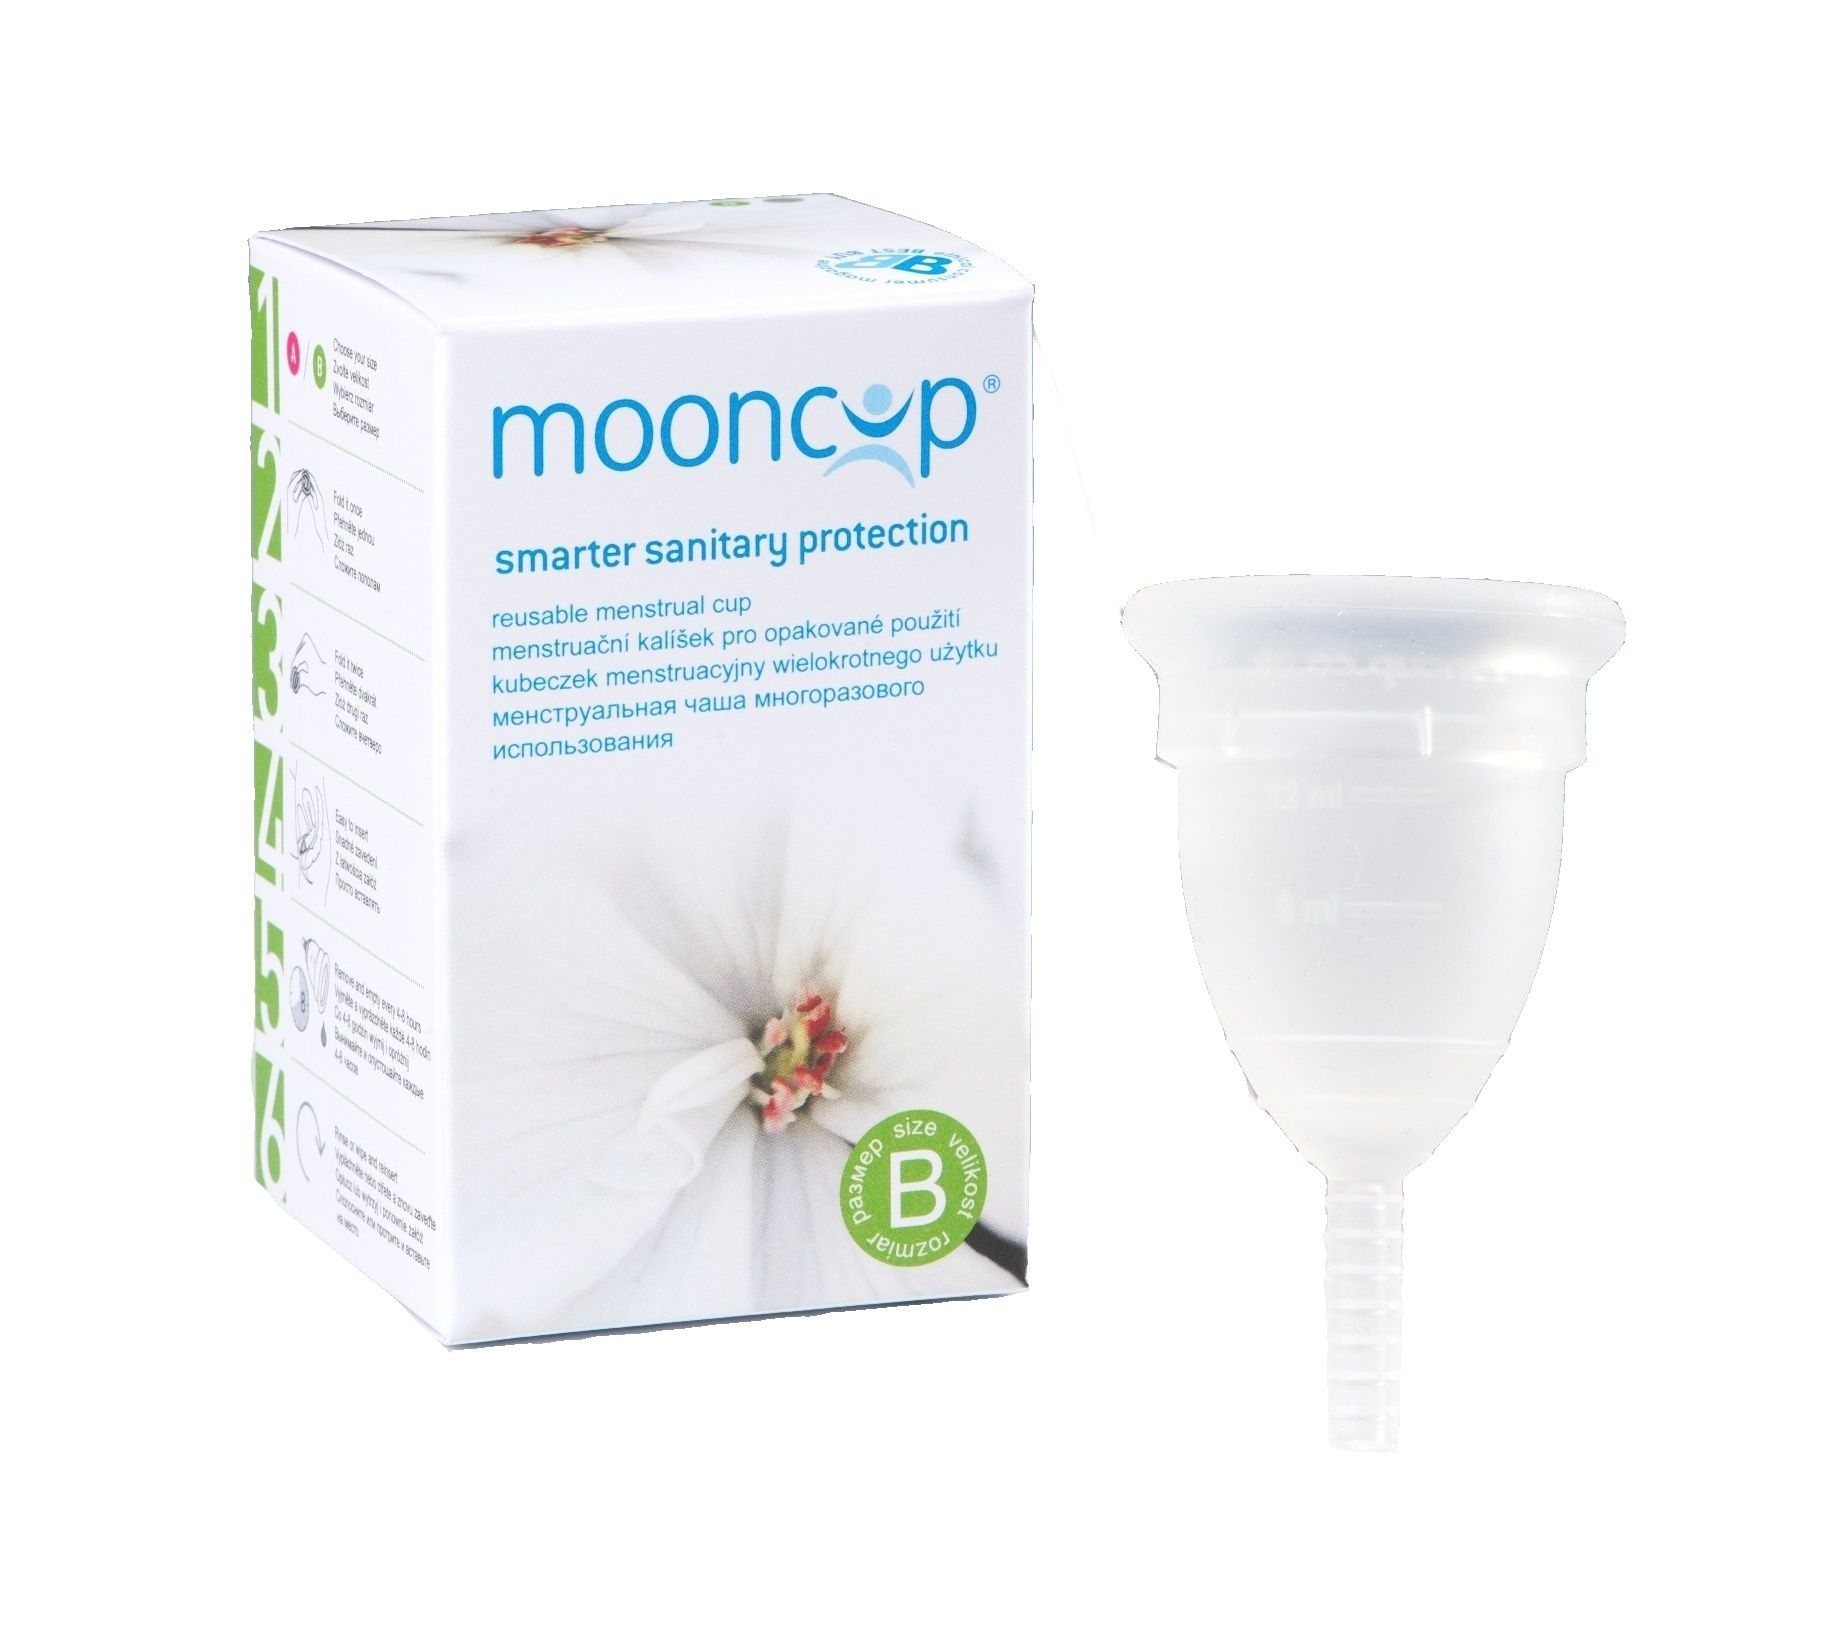 Mooncup Menstruační kalíšek velikost B 1 ks Mooncup